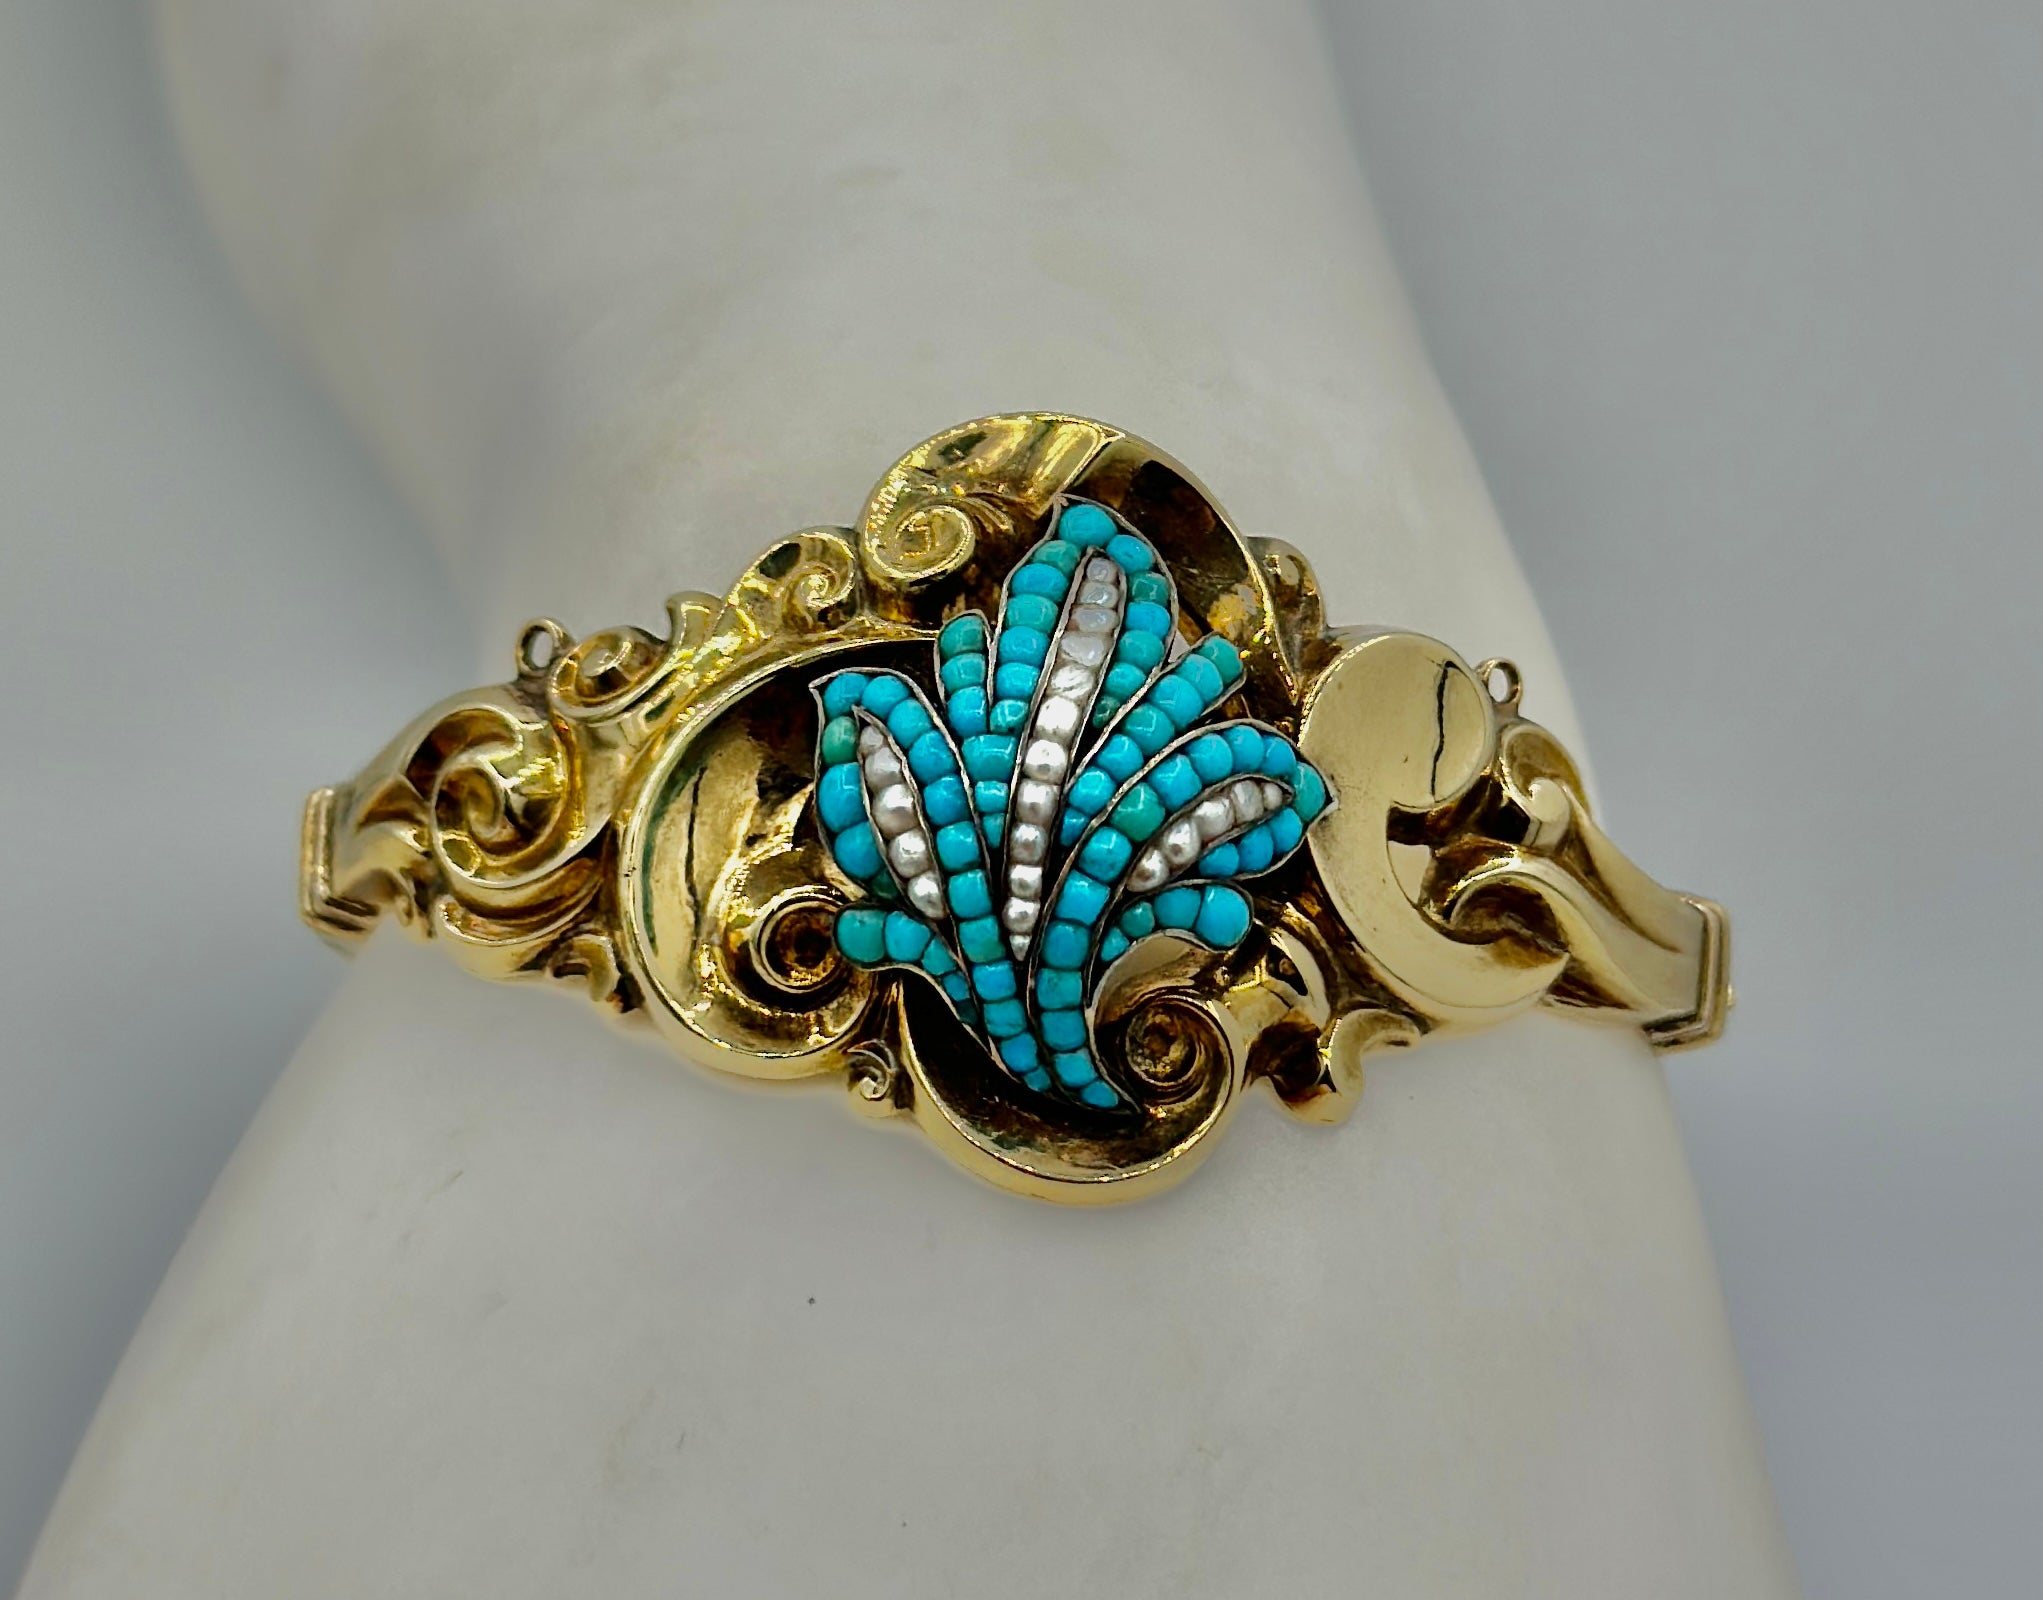 Dies ist eine wunderschöne antike viktorianische Türkis, Perle und Gold Armreif Armband.   Der Armreif mit Scharnier ist mit eleganten Repoussé-Rollen- und Blattmotiven versehen, die mit Türkiscabochons und Saatperlen besetzt sind.  Der Innenumfang